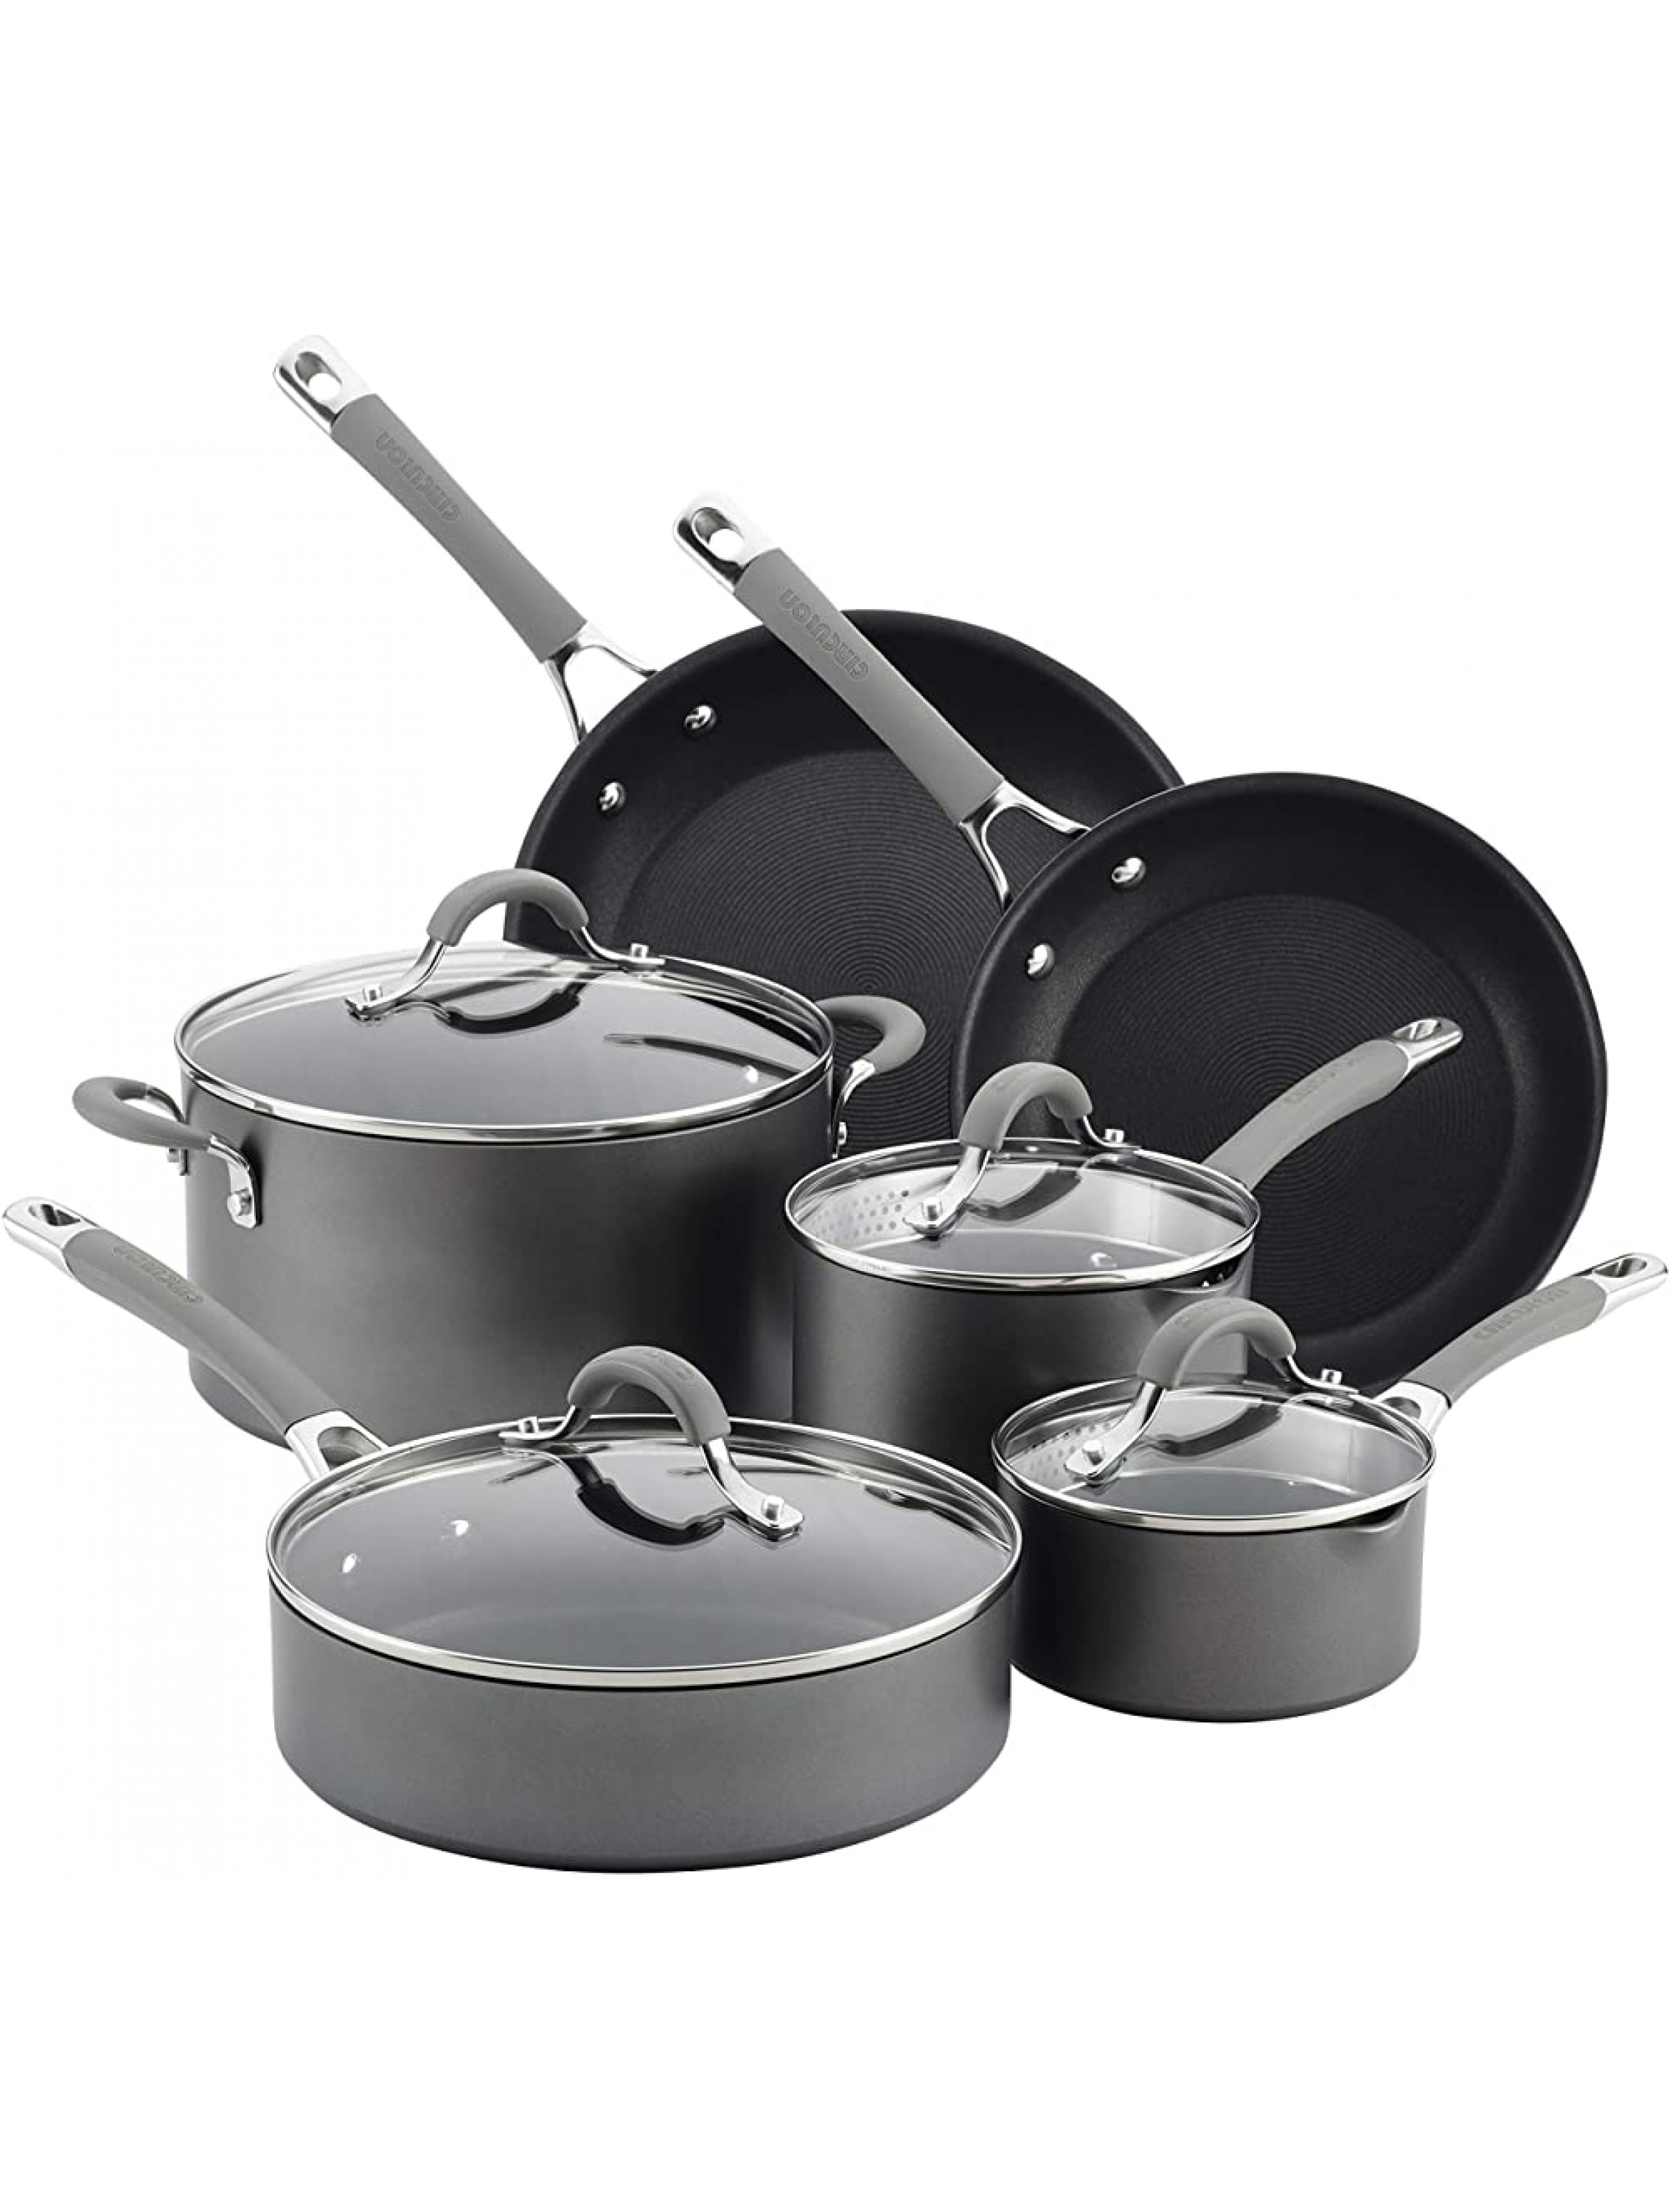 Circulon Elementum Hard Anodized Nonstick Cookware Pots and Pans Set 10 Piece Oyster Gray - BNA5K5GKN